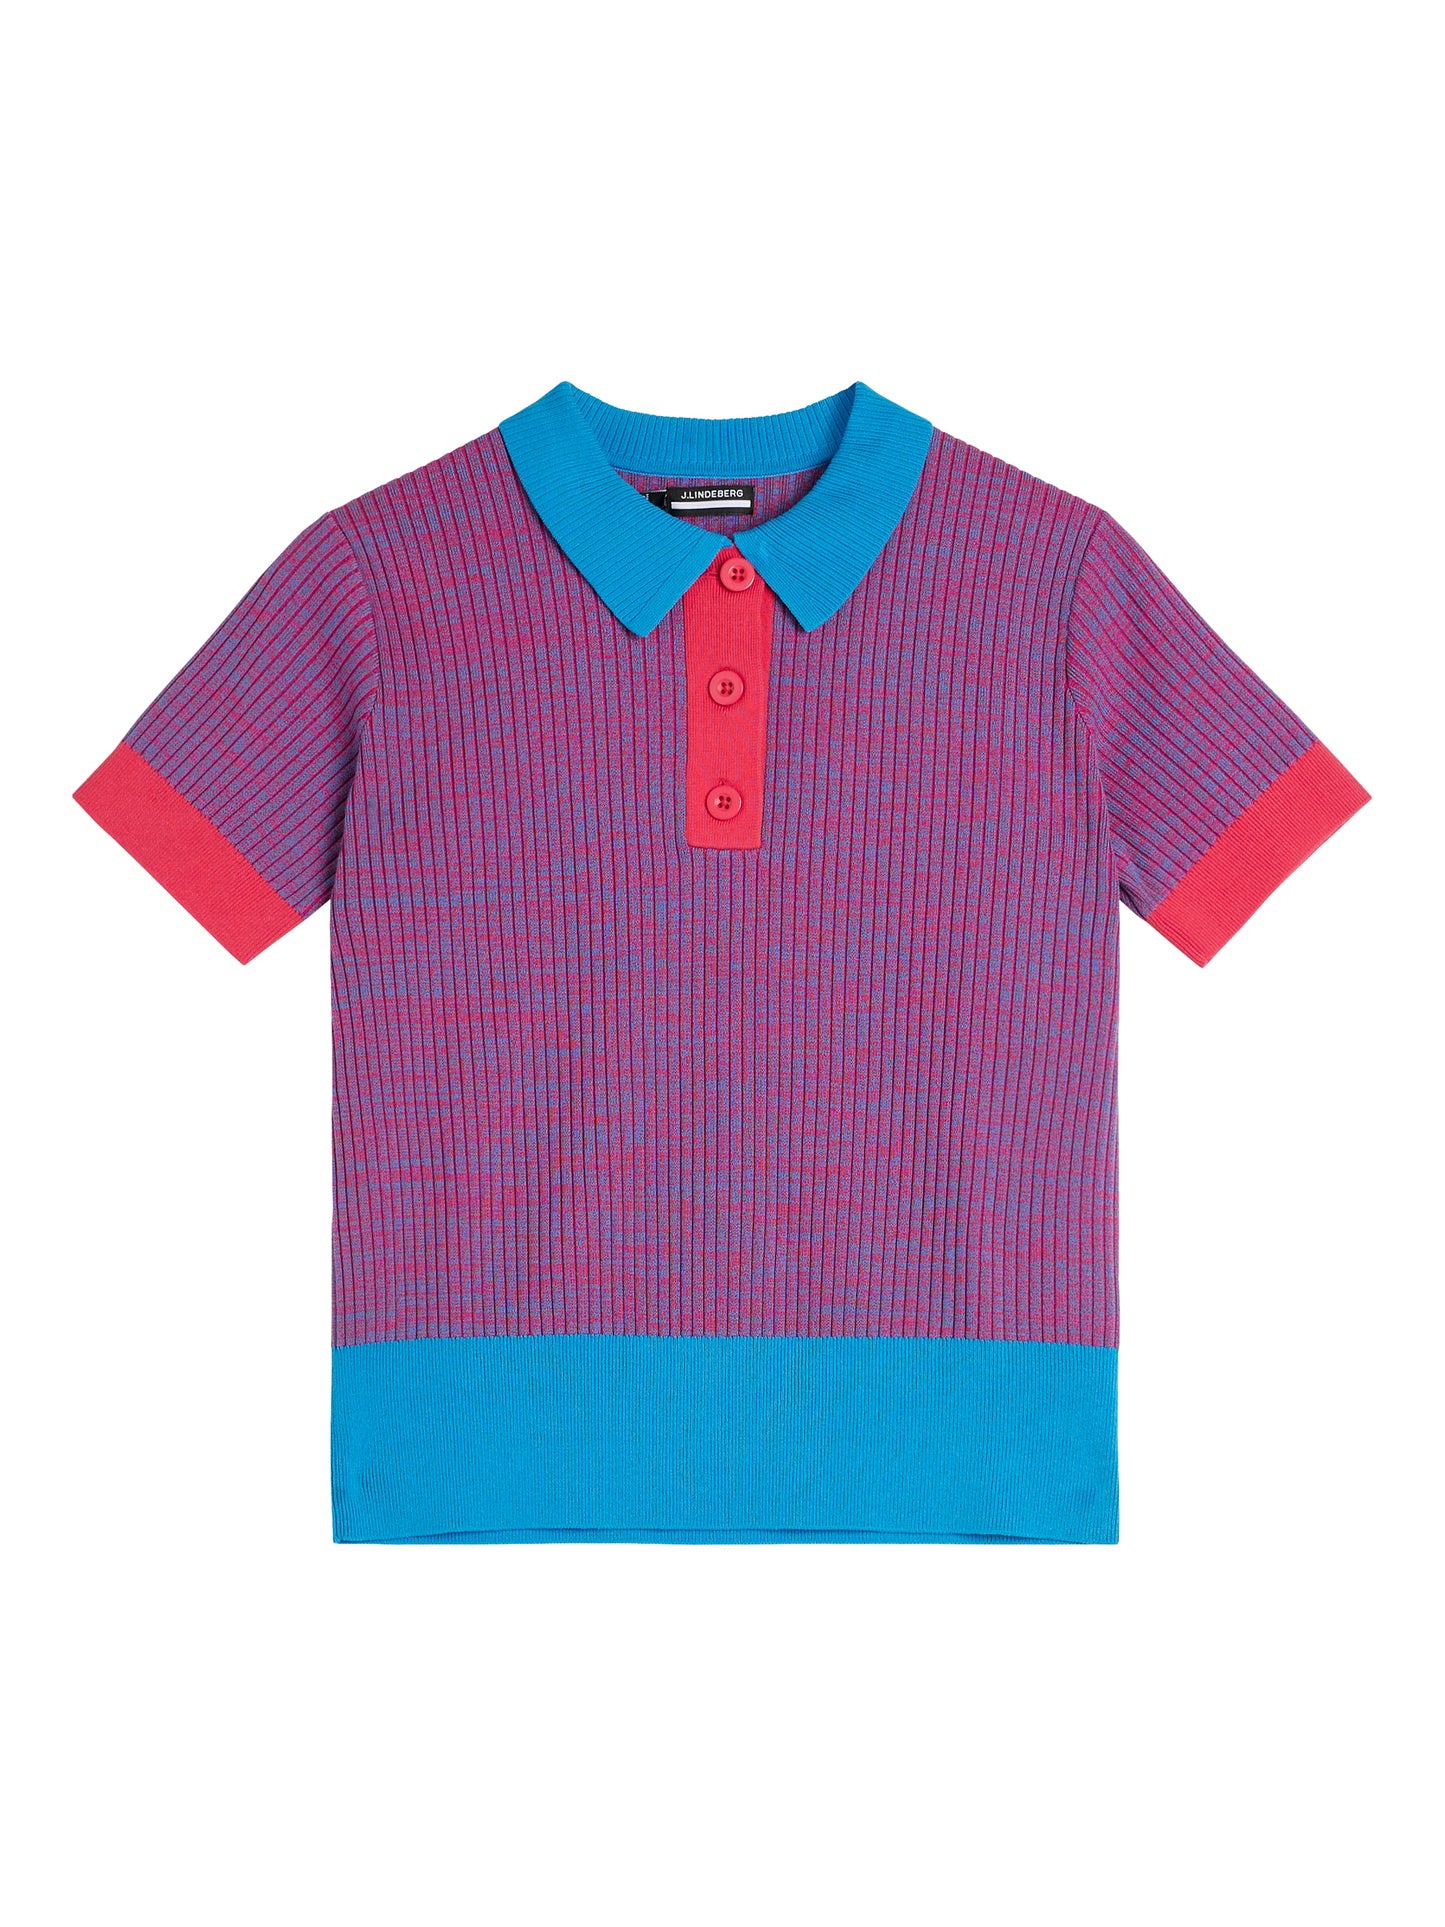 Vega Knitted Shirt / Brilliant Blue